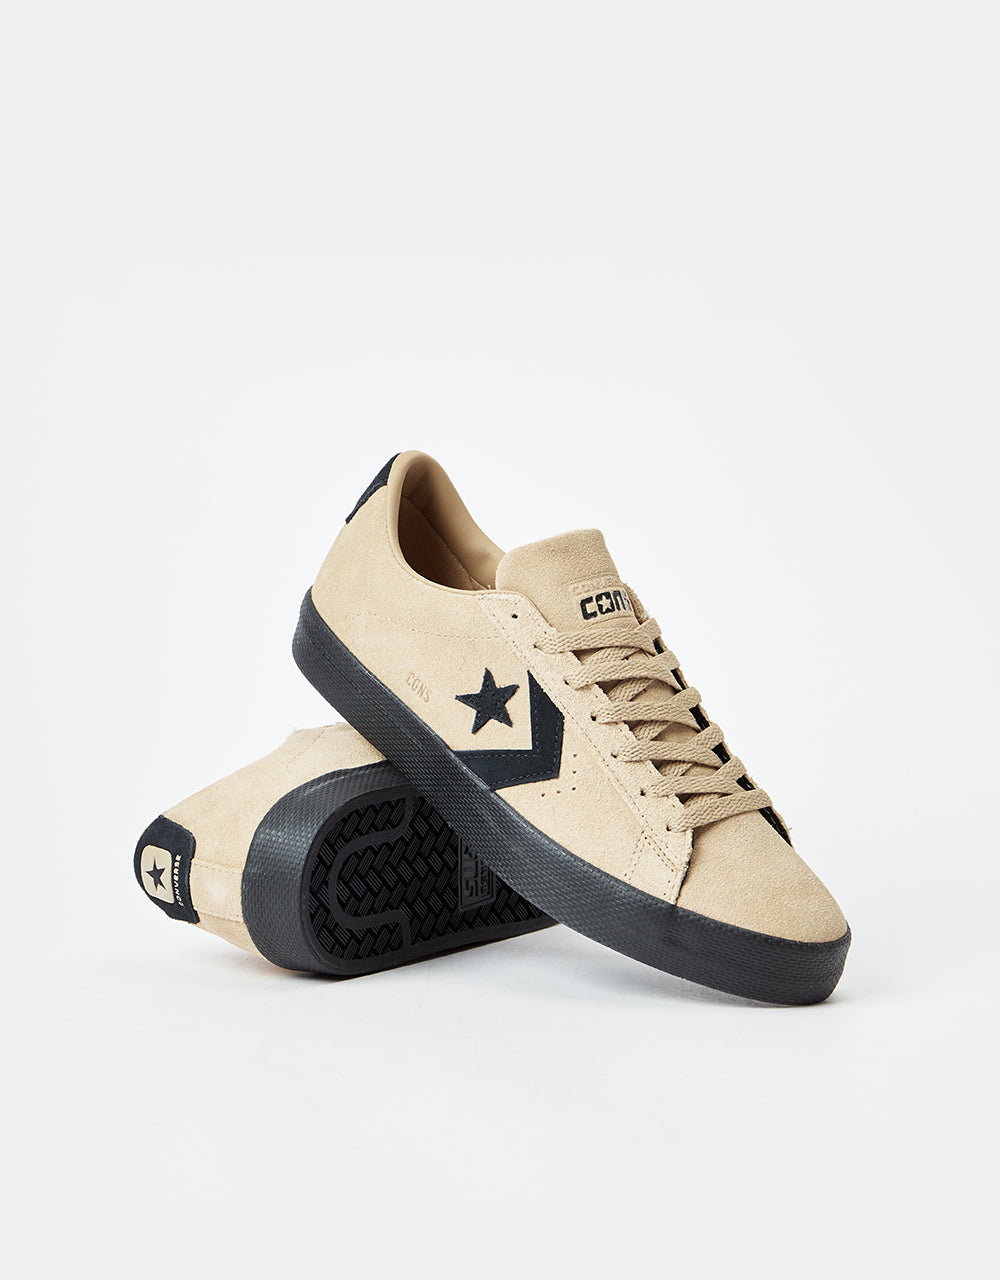 Converse Pro Leather Vulc Pro Skate Shoes - Nomad Khaki/Black/Black